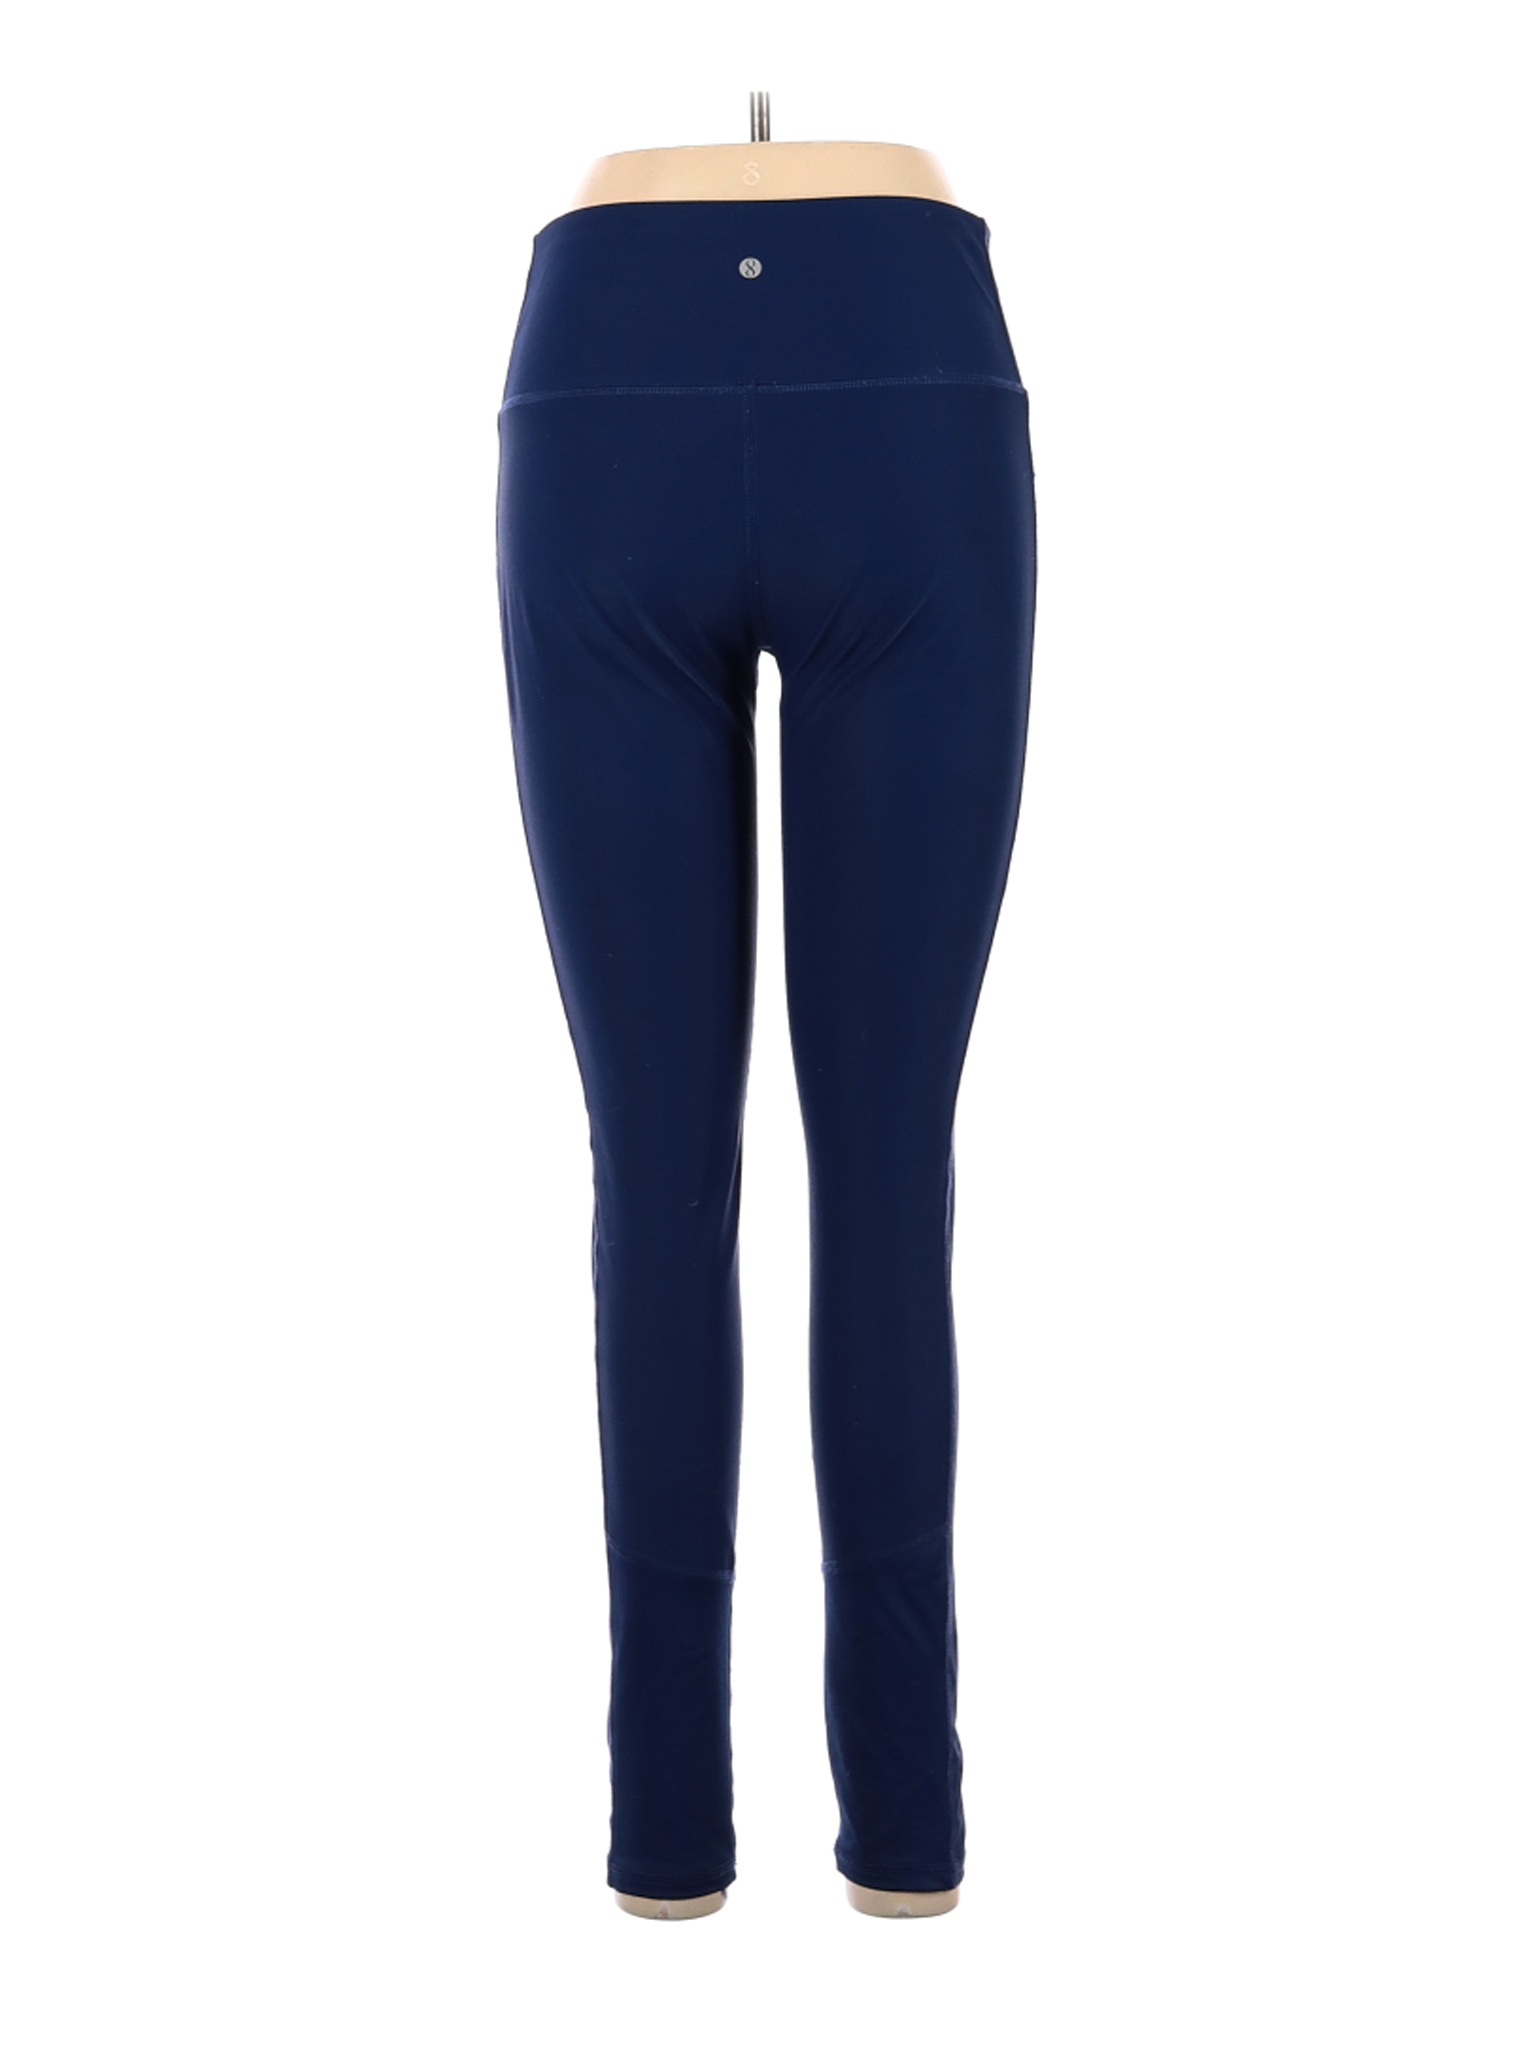 RBX Blue Active Pants Size M - 66% off